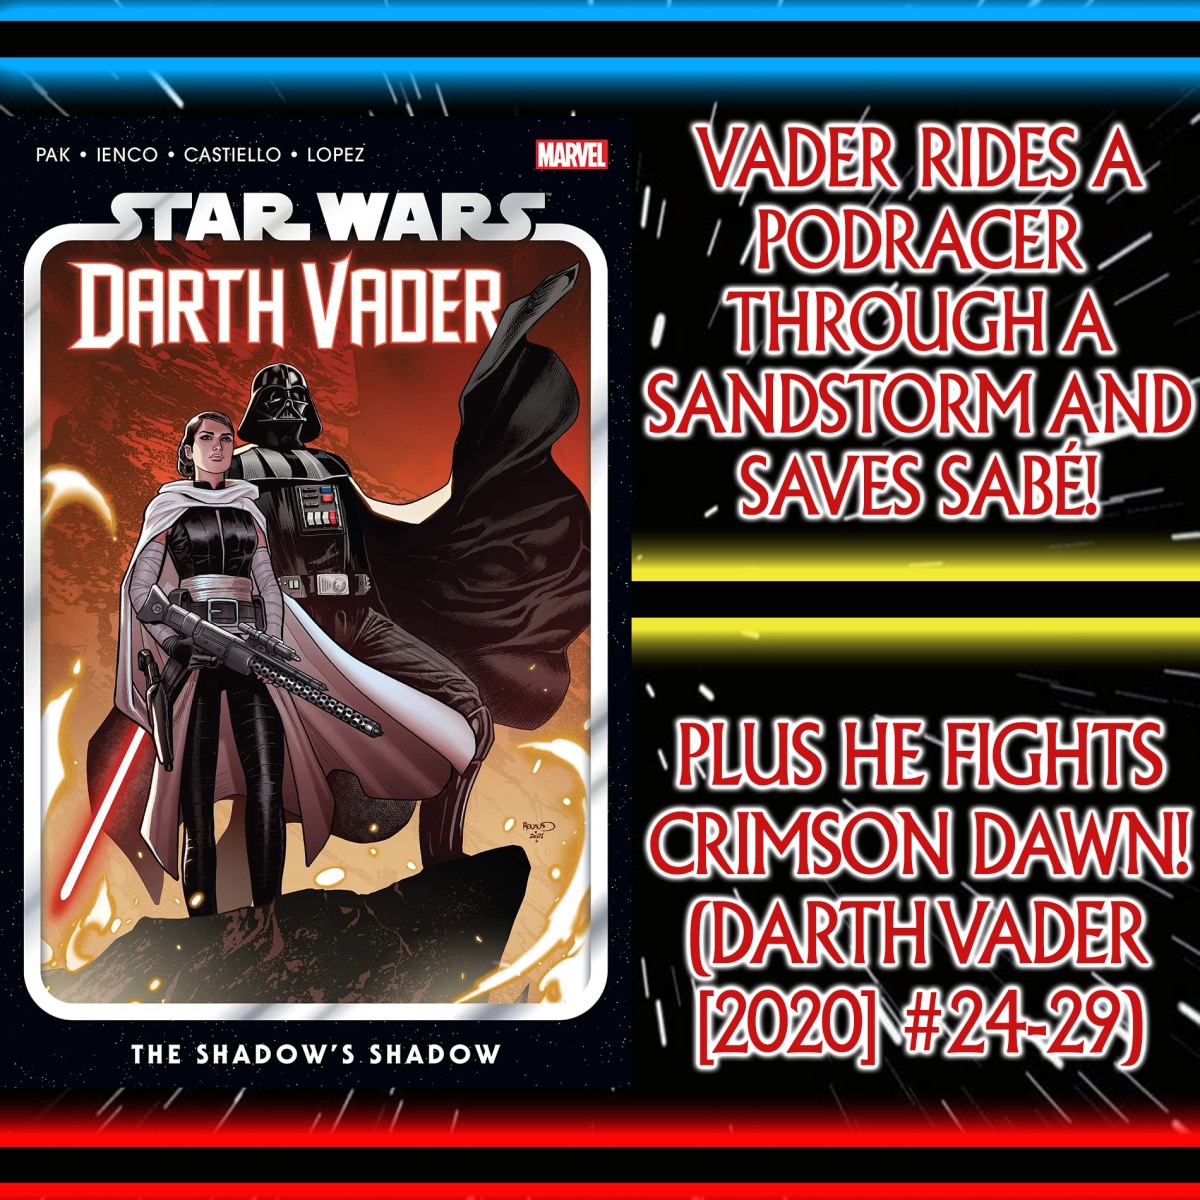 Darth Vader Rides A Podracer Through A Sandstorm! Plus He Saves Sabé & Fights Crimson Dawn (Darth Vader [2020] #24-29) – Ep 119